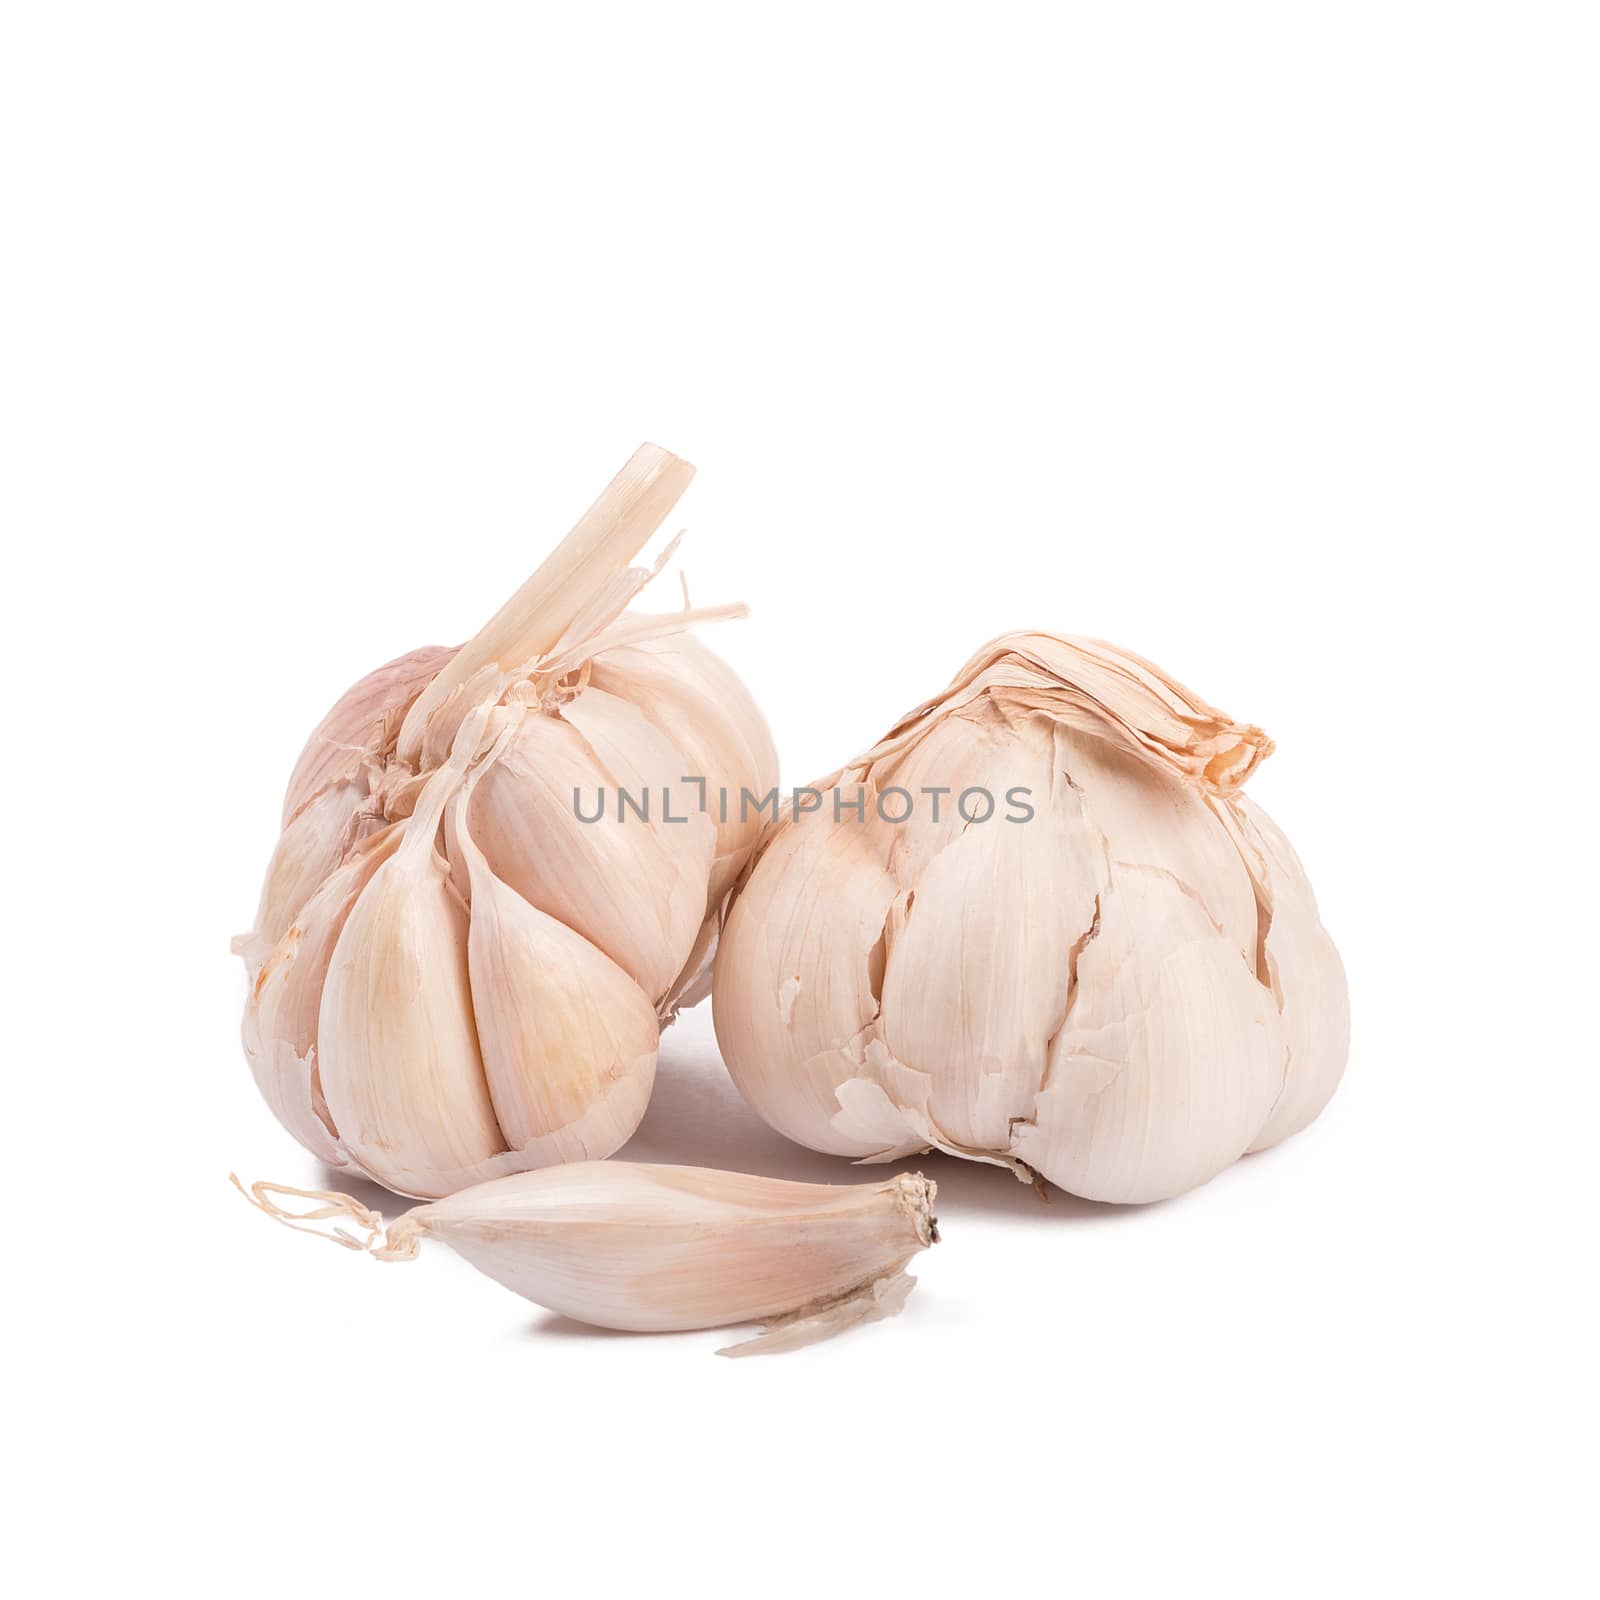 Isolated garlic. Raw garlic isolated on white background.